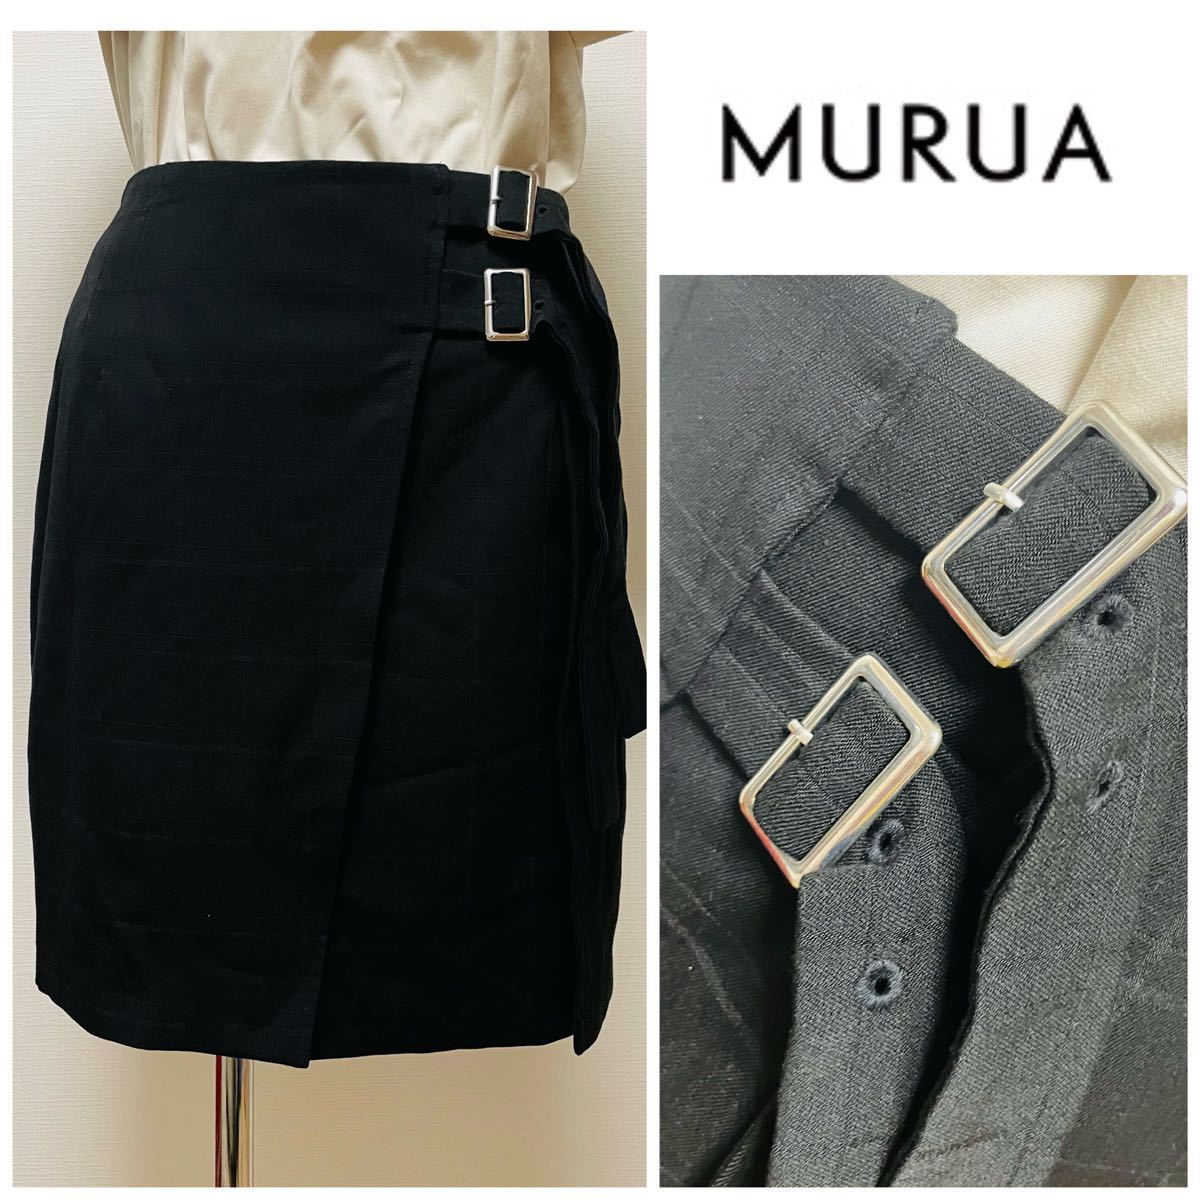 MURUAムルーア 黒透かしチェック 巻きスカート風スカート ラップ